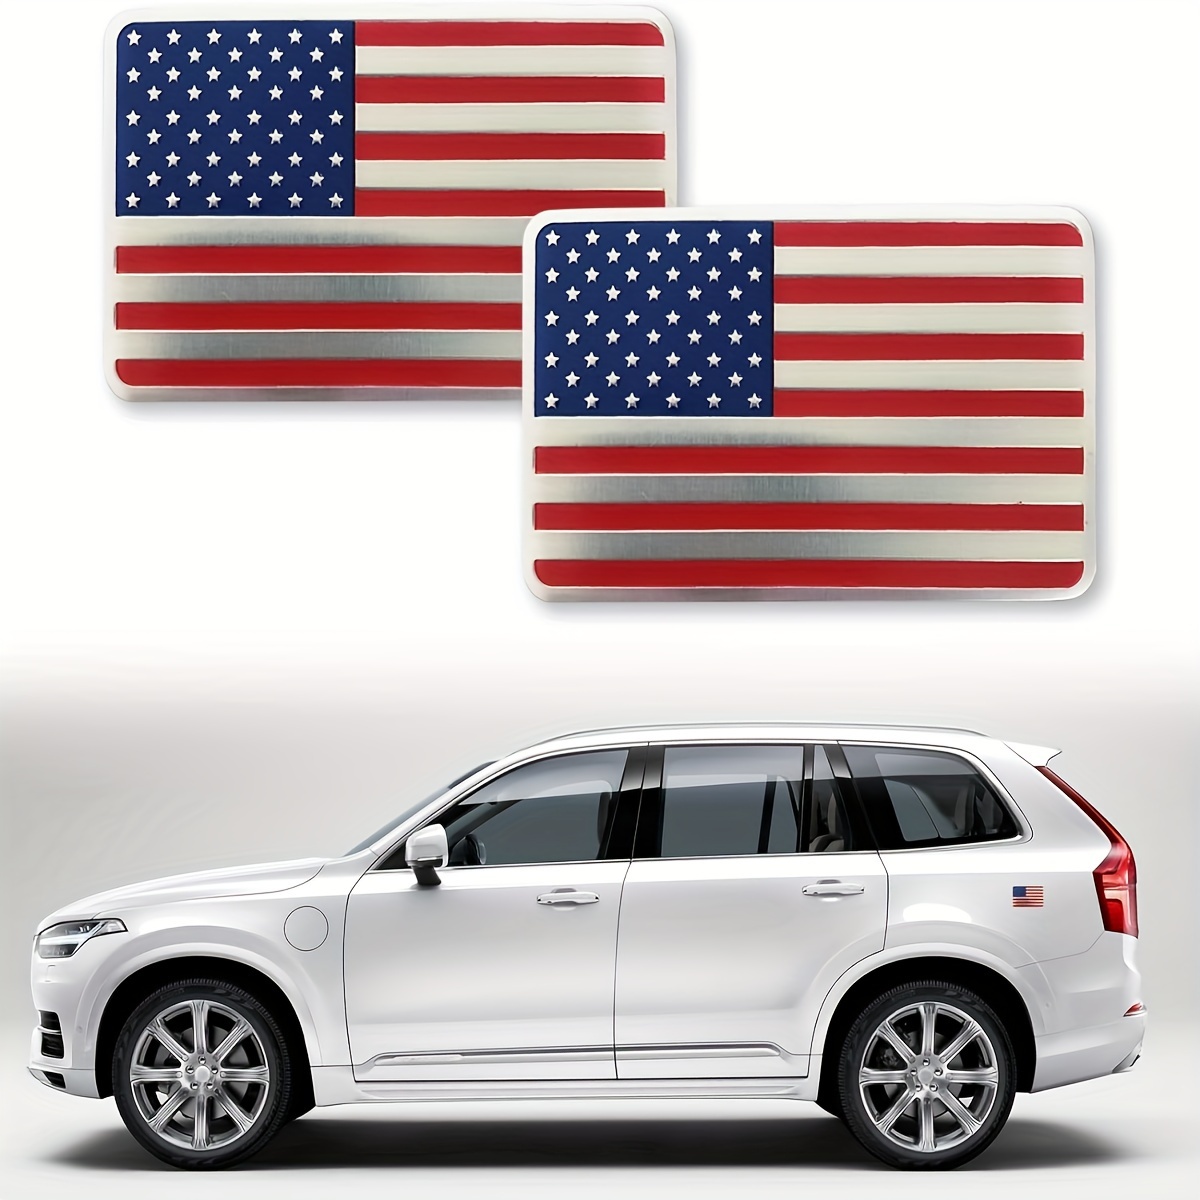 アメリカ国旗の3Dメタルカーステッカーエンブレム、愛国的な軍事バッジデカール、車、トラック、SUV、ラップトップ、ウィンドウ、オートバイ用 -  ユニバーサルフィット、アルミ素材（5cm x 8cm / 1.9in x 3.1in）